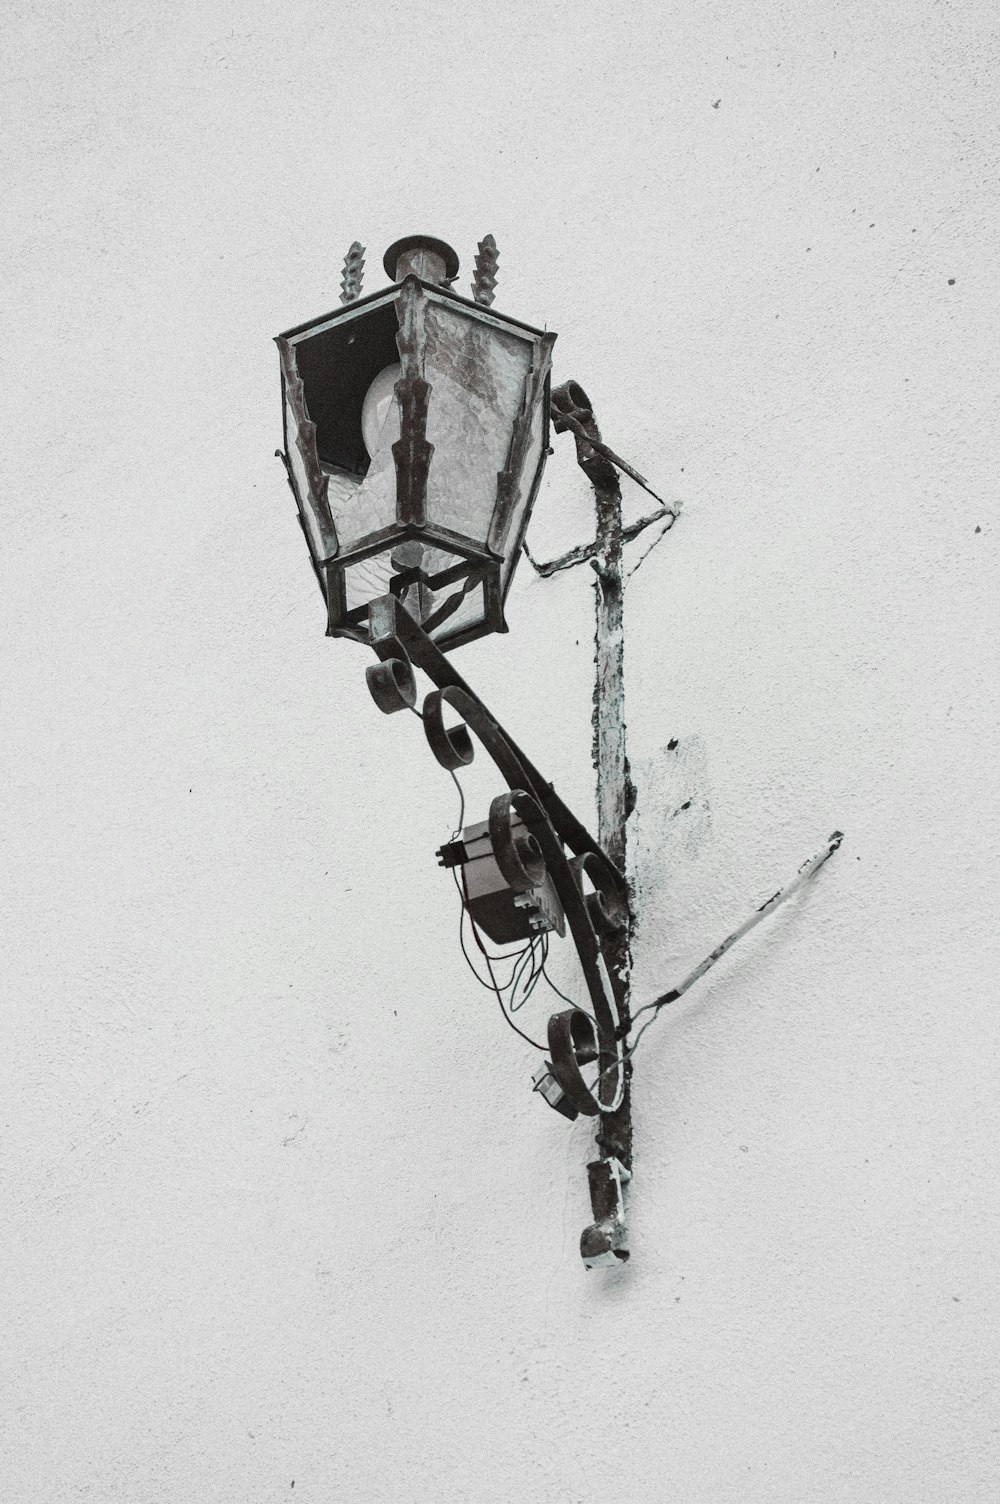 un lampione su un palo nella neve